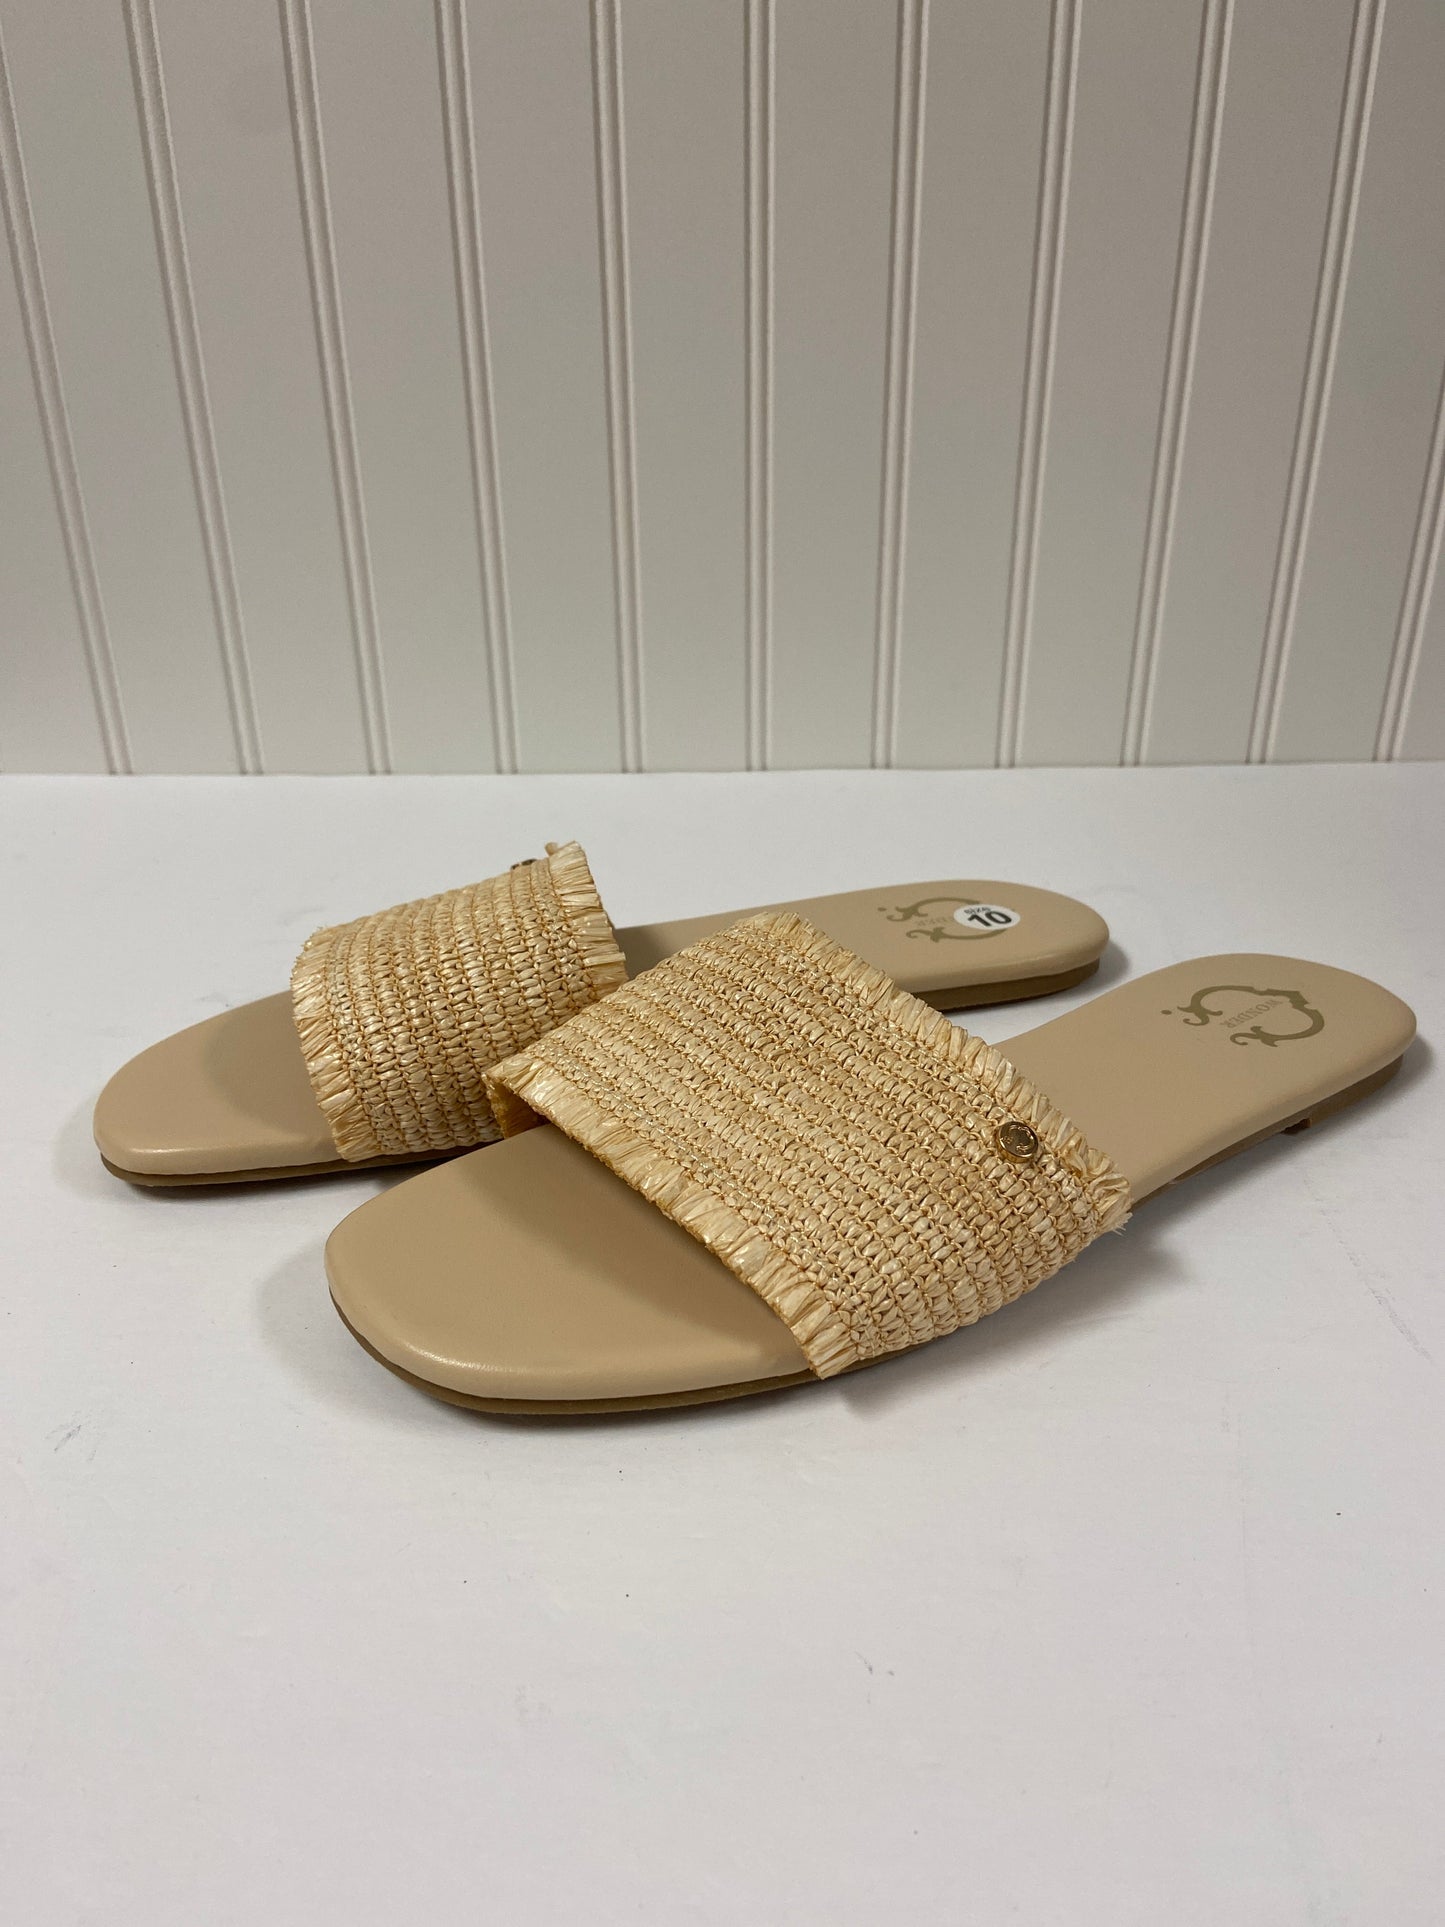 Sandals Flats By C Wonder  Size: 10